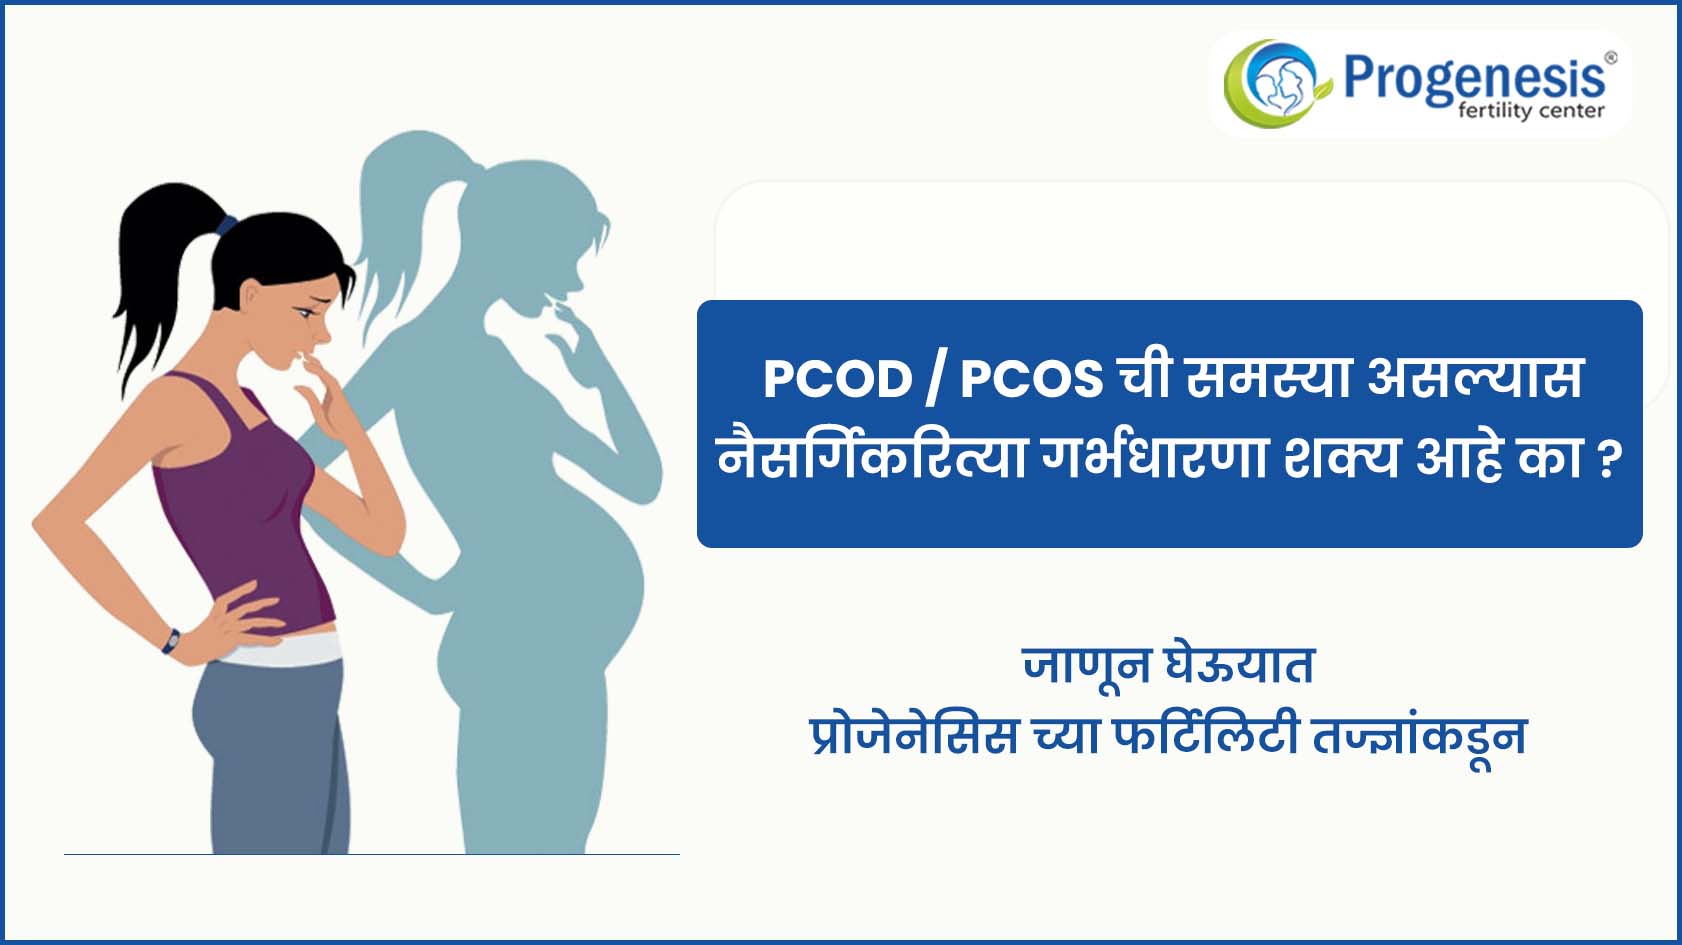 PCOD/PCOS ची समस्या असल्यास नैसर्गिकरित्या गर्भधारणा शक्य आहे का?